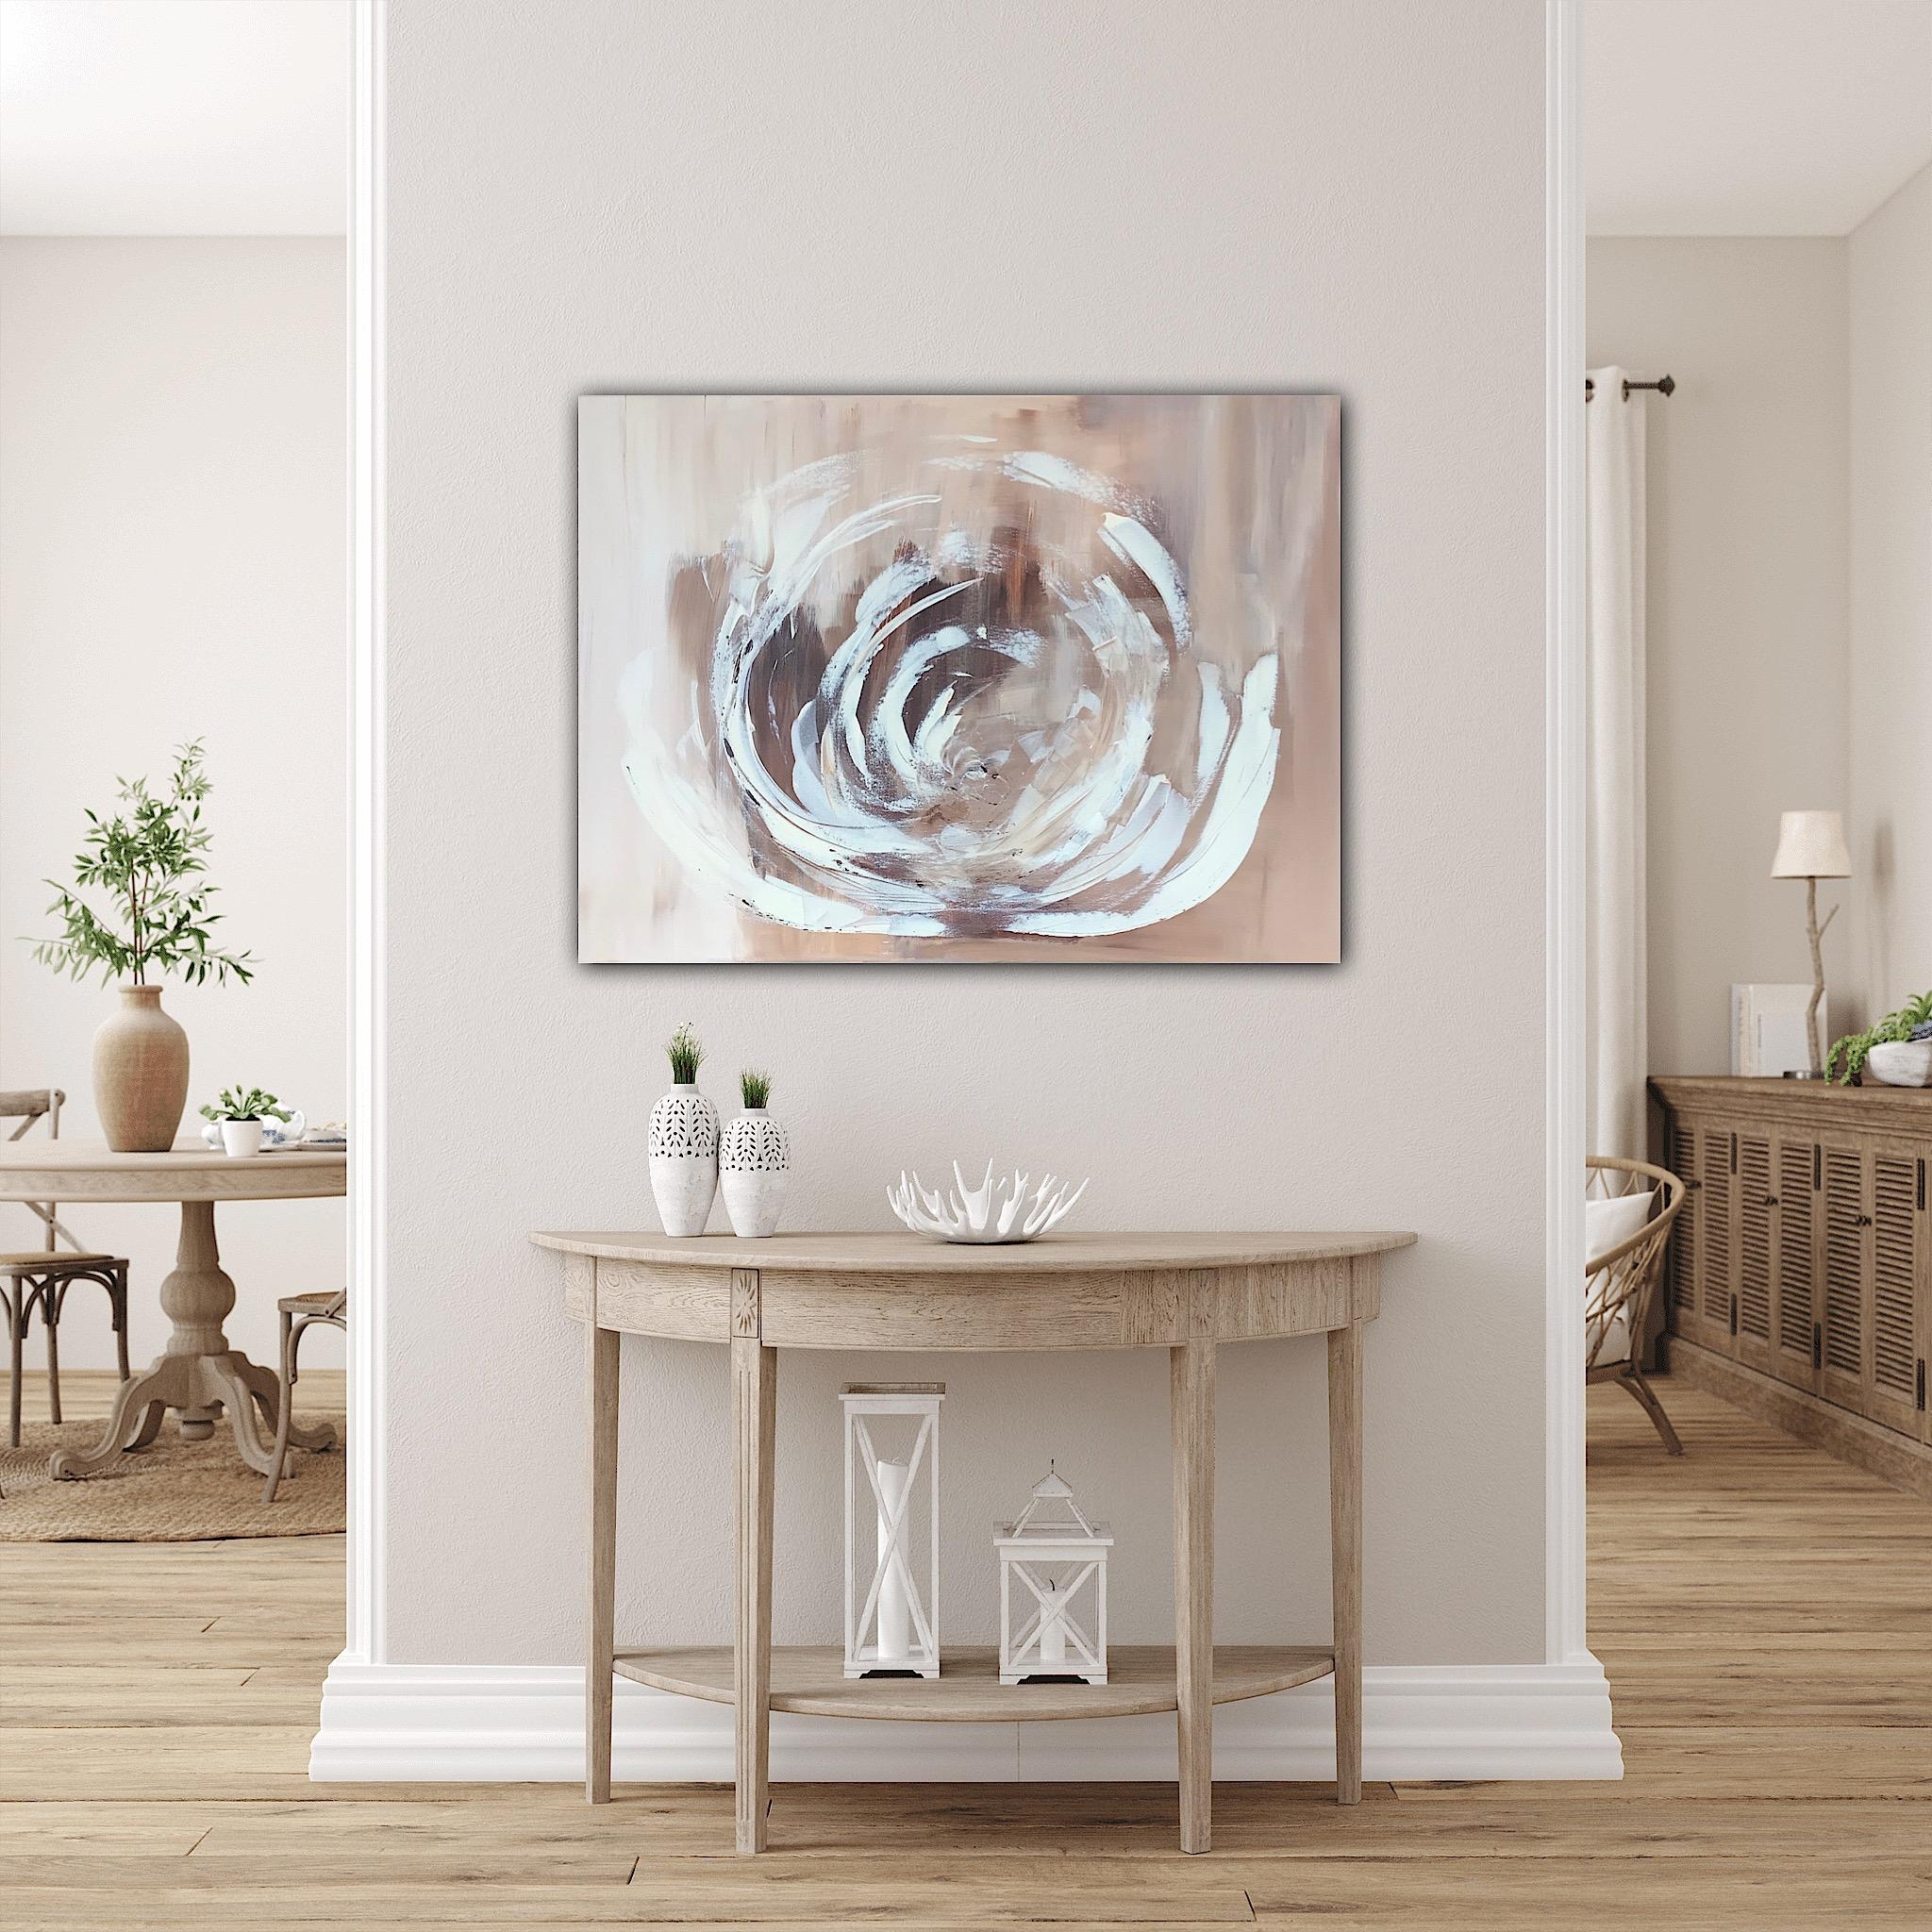 🪷 Lotusblüte- sold 🔴

Das Gemälde verzaubert mit warmen erdigen Farben.

#couchstyle #wohnzimmer #flur #deko #art